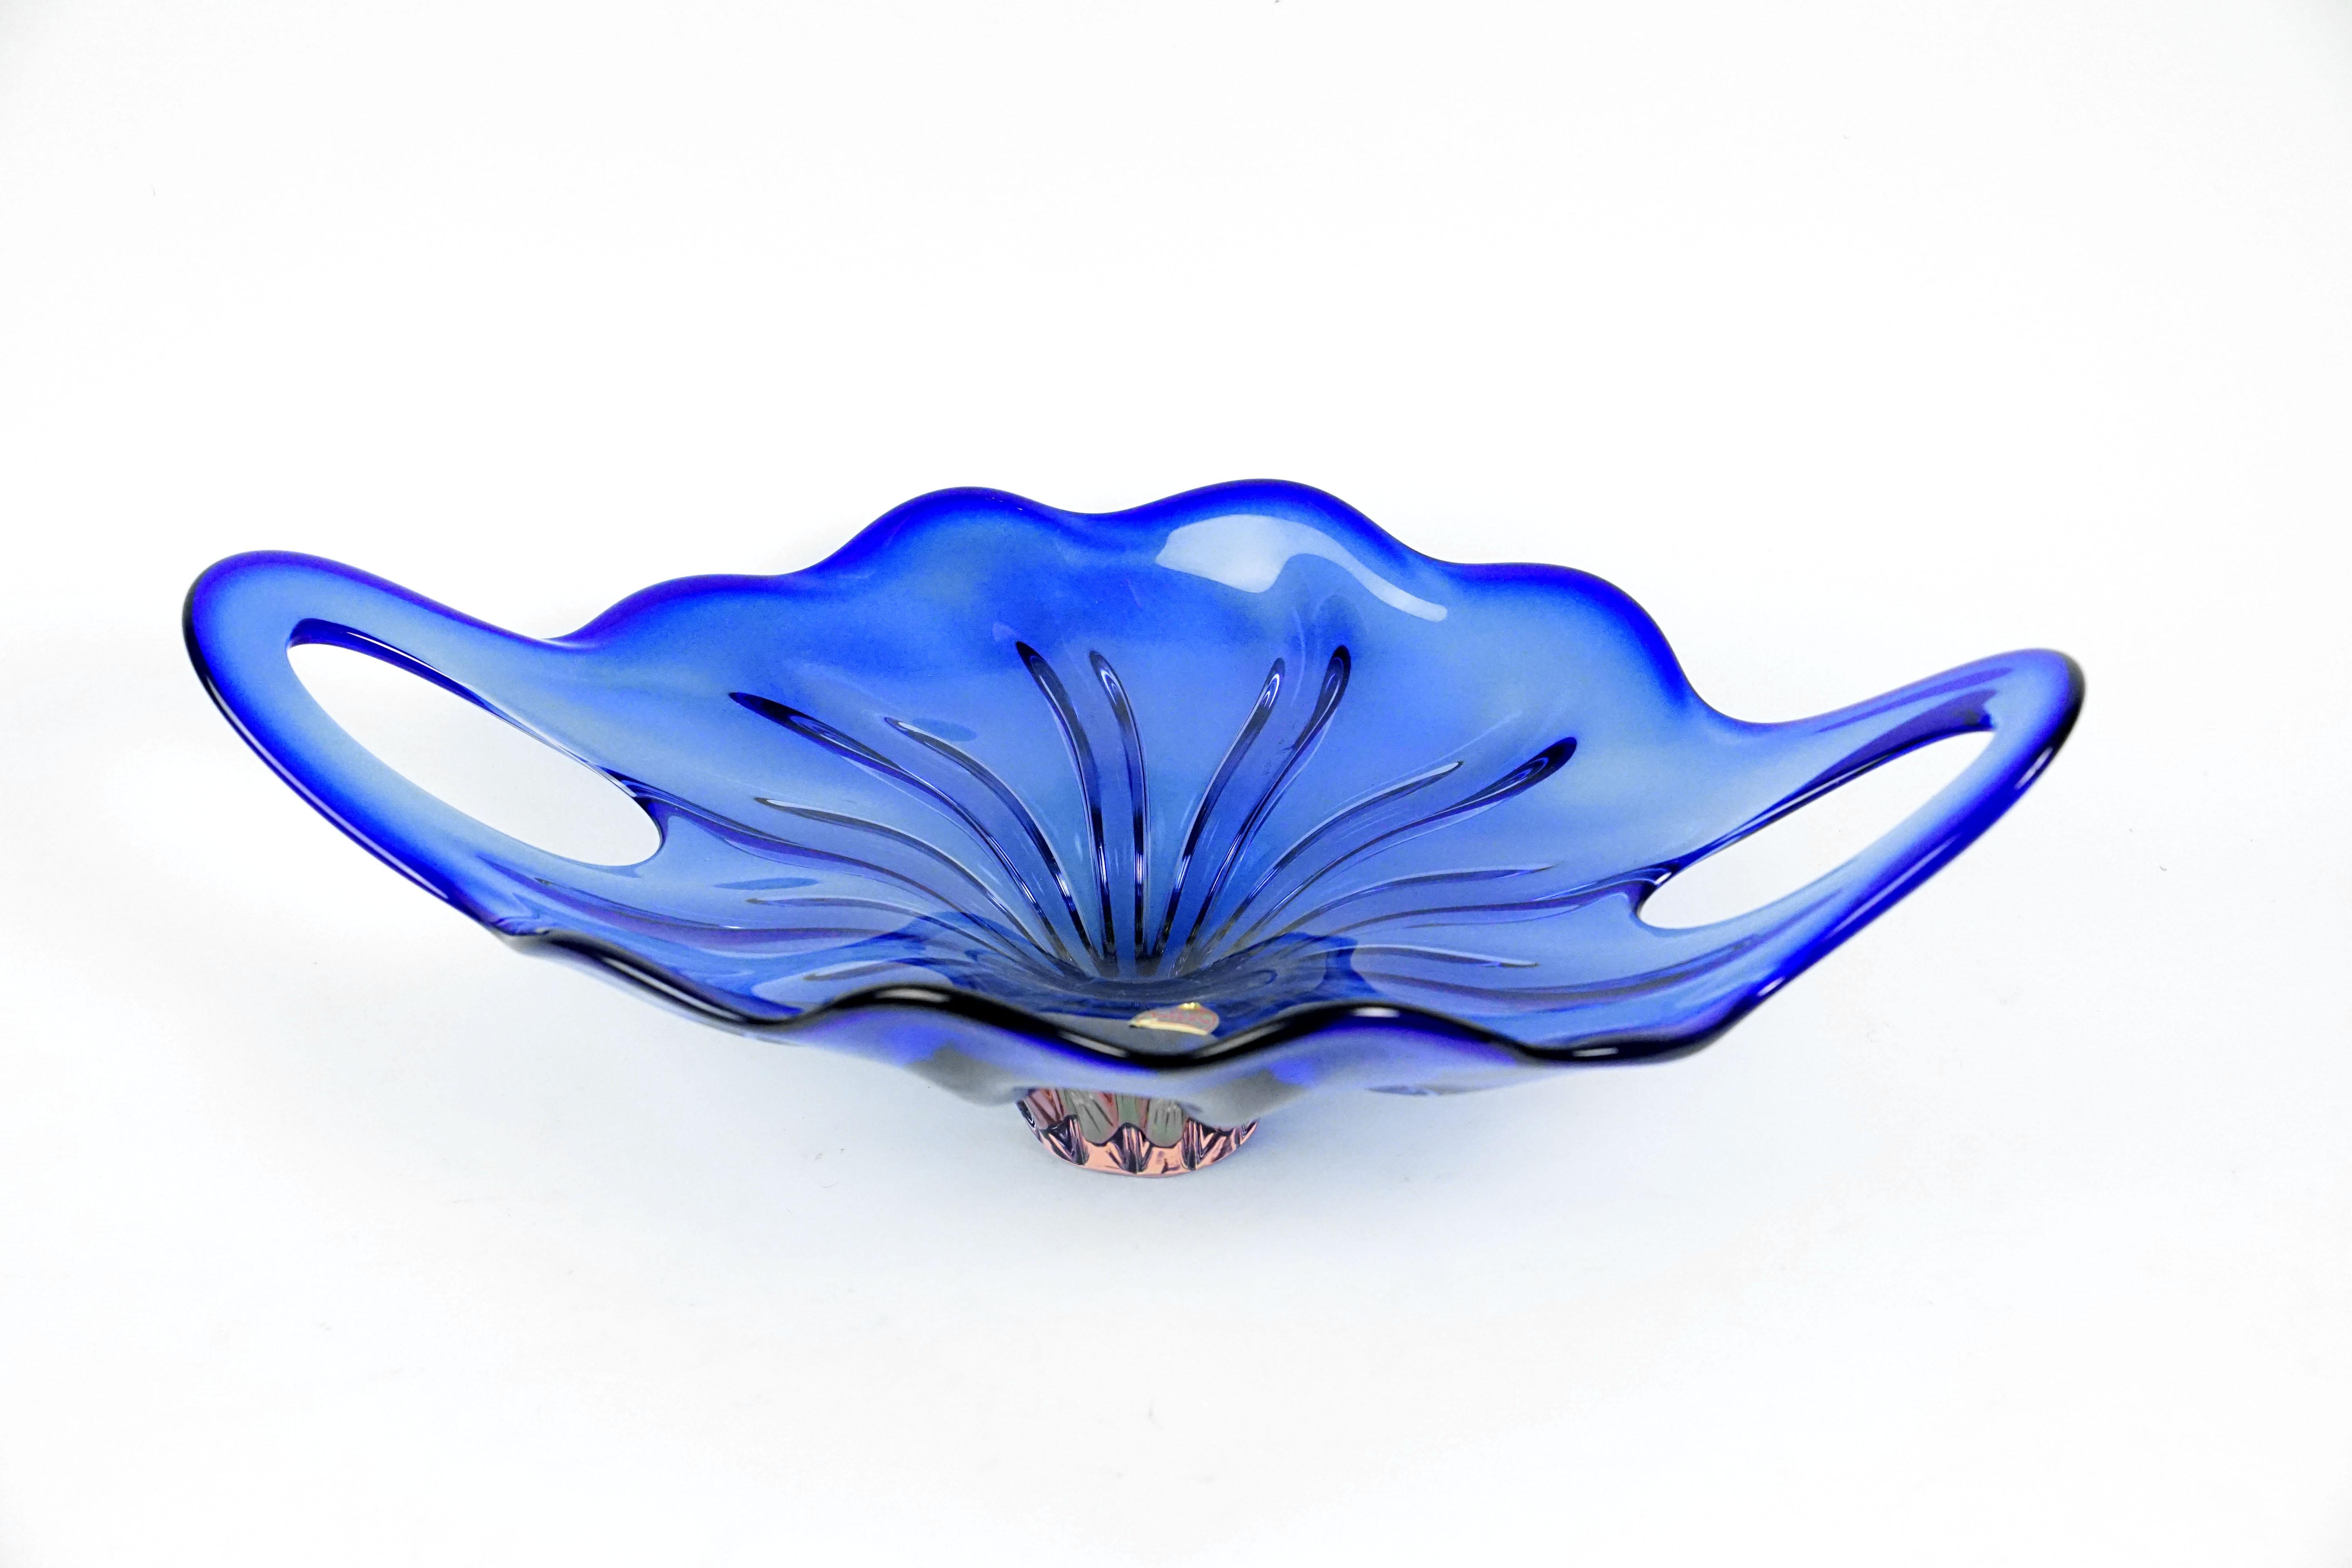 Czech Blue Art Glass Bowl by Josef Hospodka for Chribska Glassmakers, 1960s For Sale